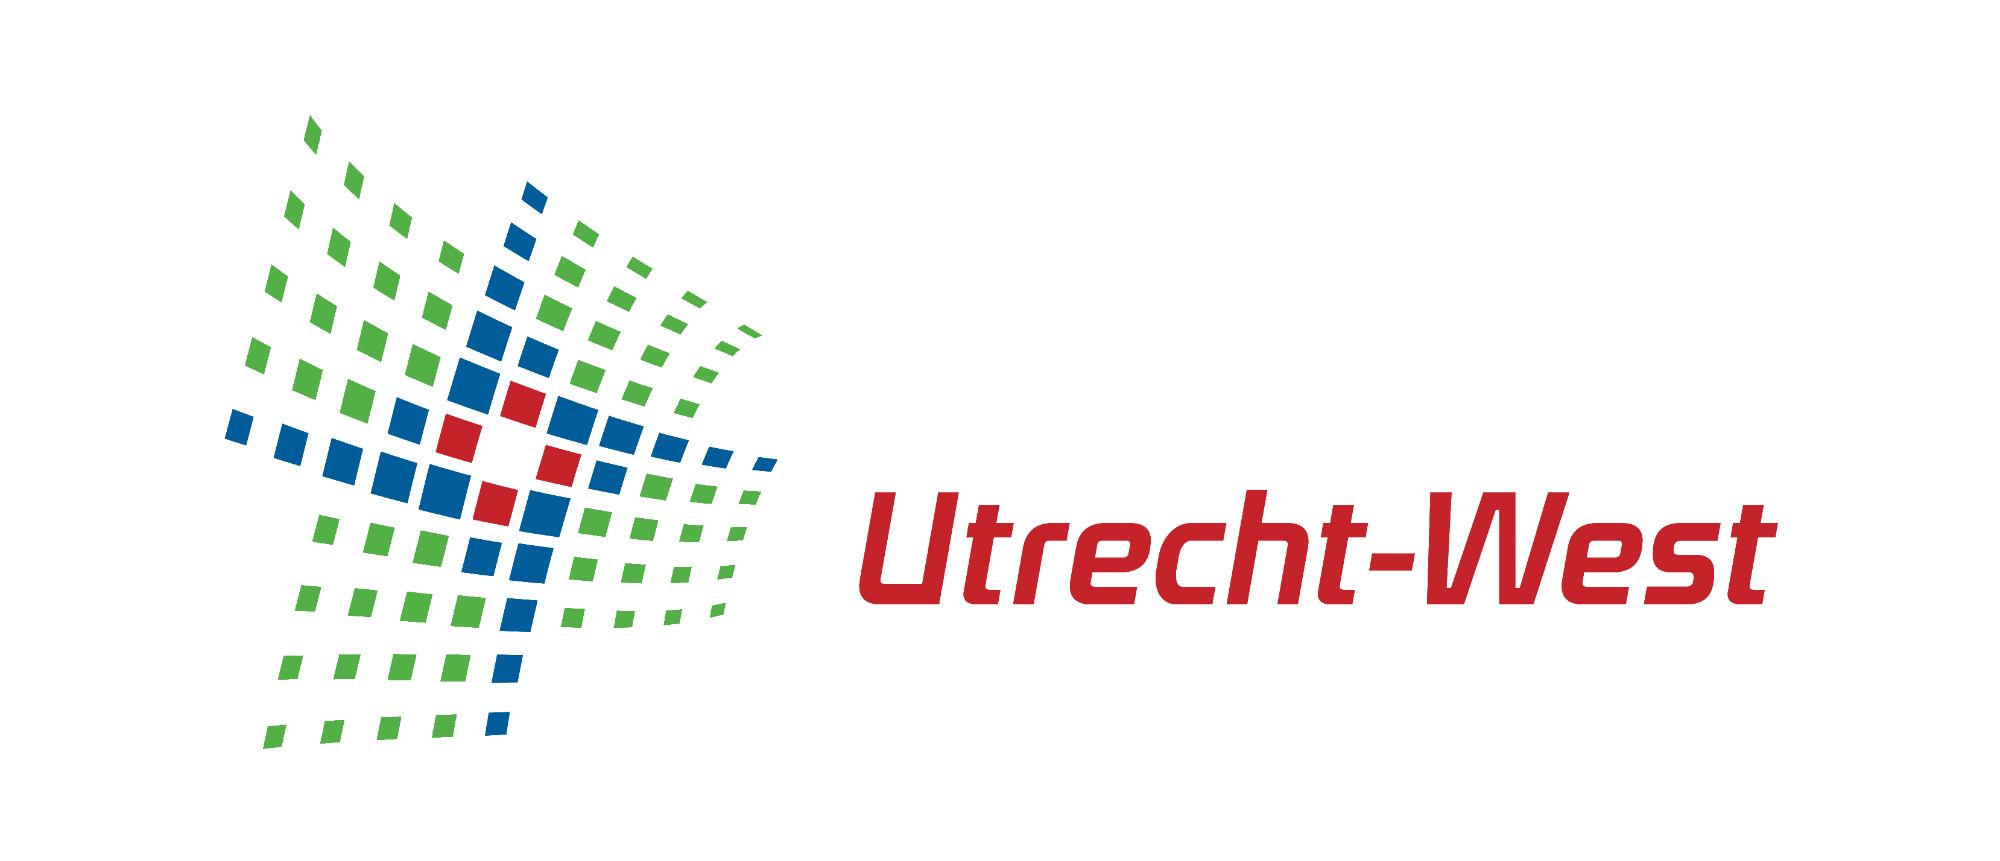 utrecht-west-logo.png